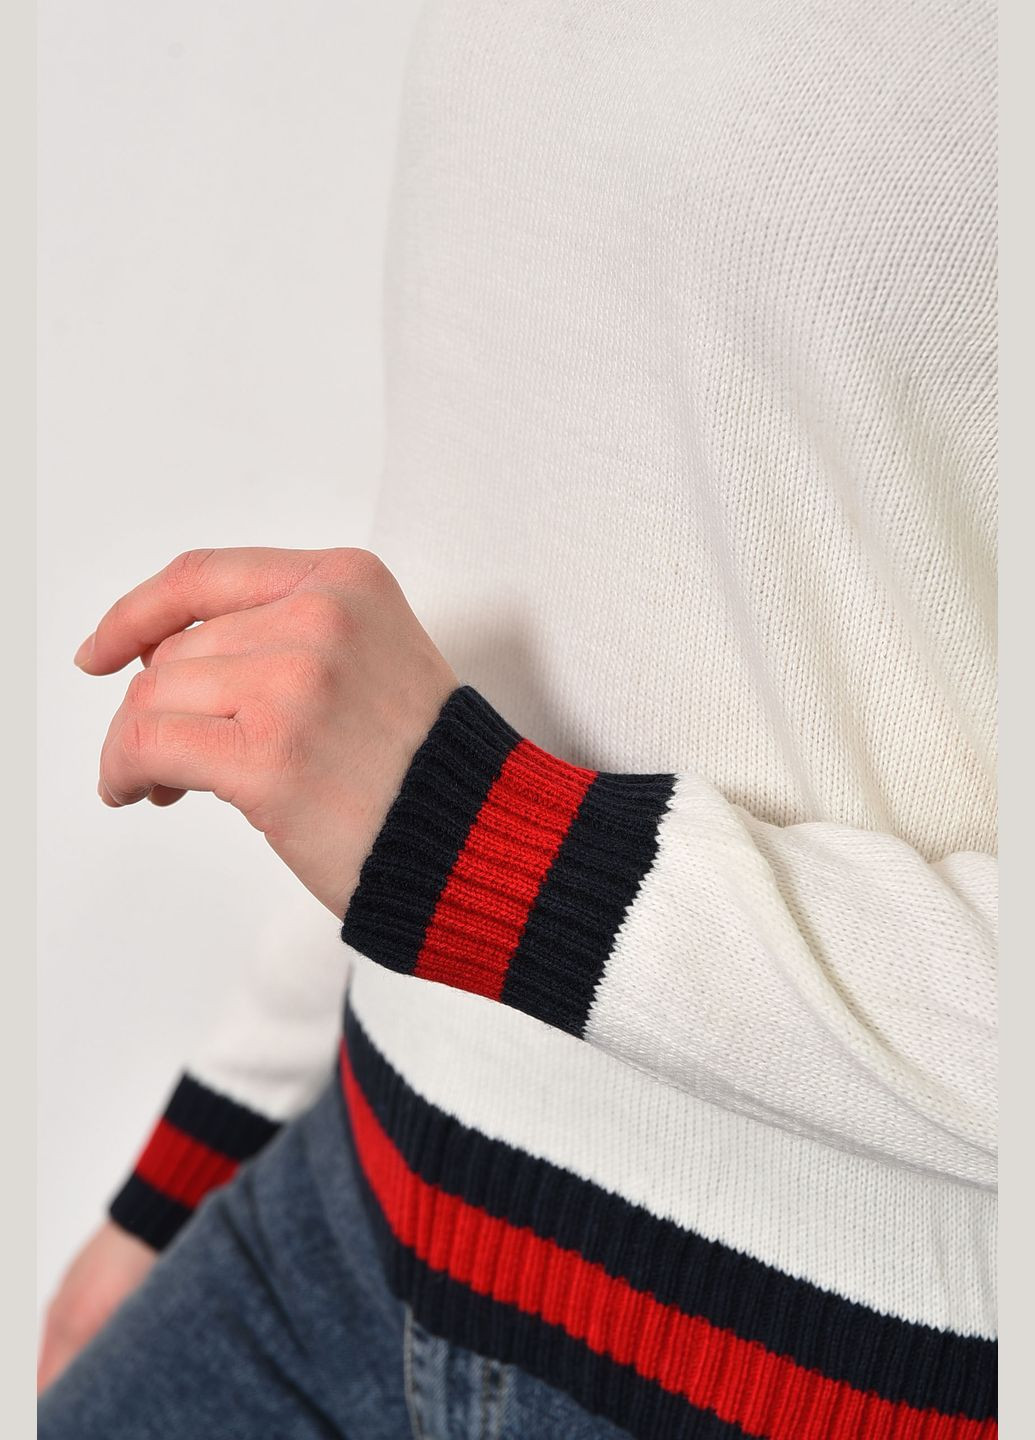 Белый демисезонный свитер женский белого цвета пуловер Let's Shop